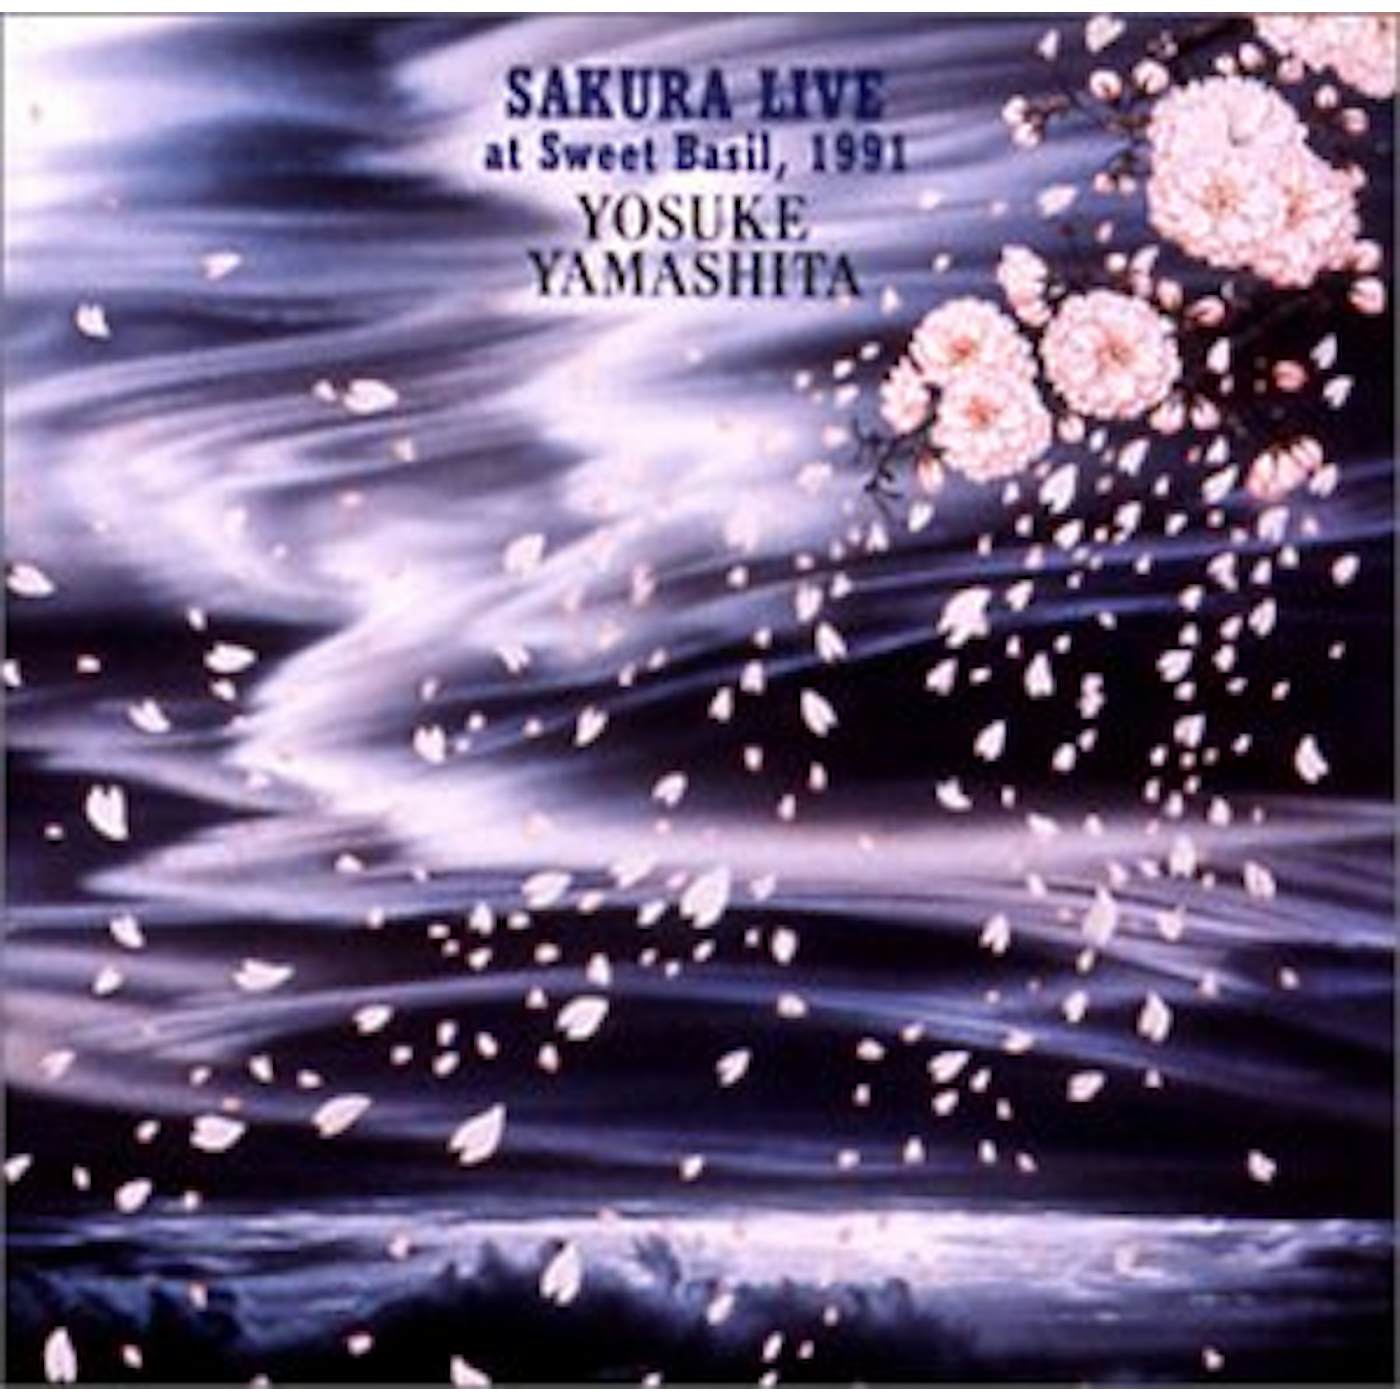 Yosuke Yamashita SAKURA LIVE AT SWEET BASIL '91 CD